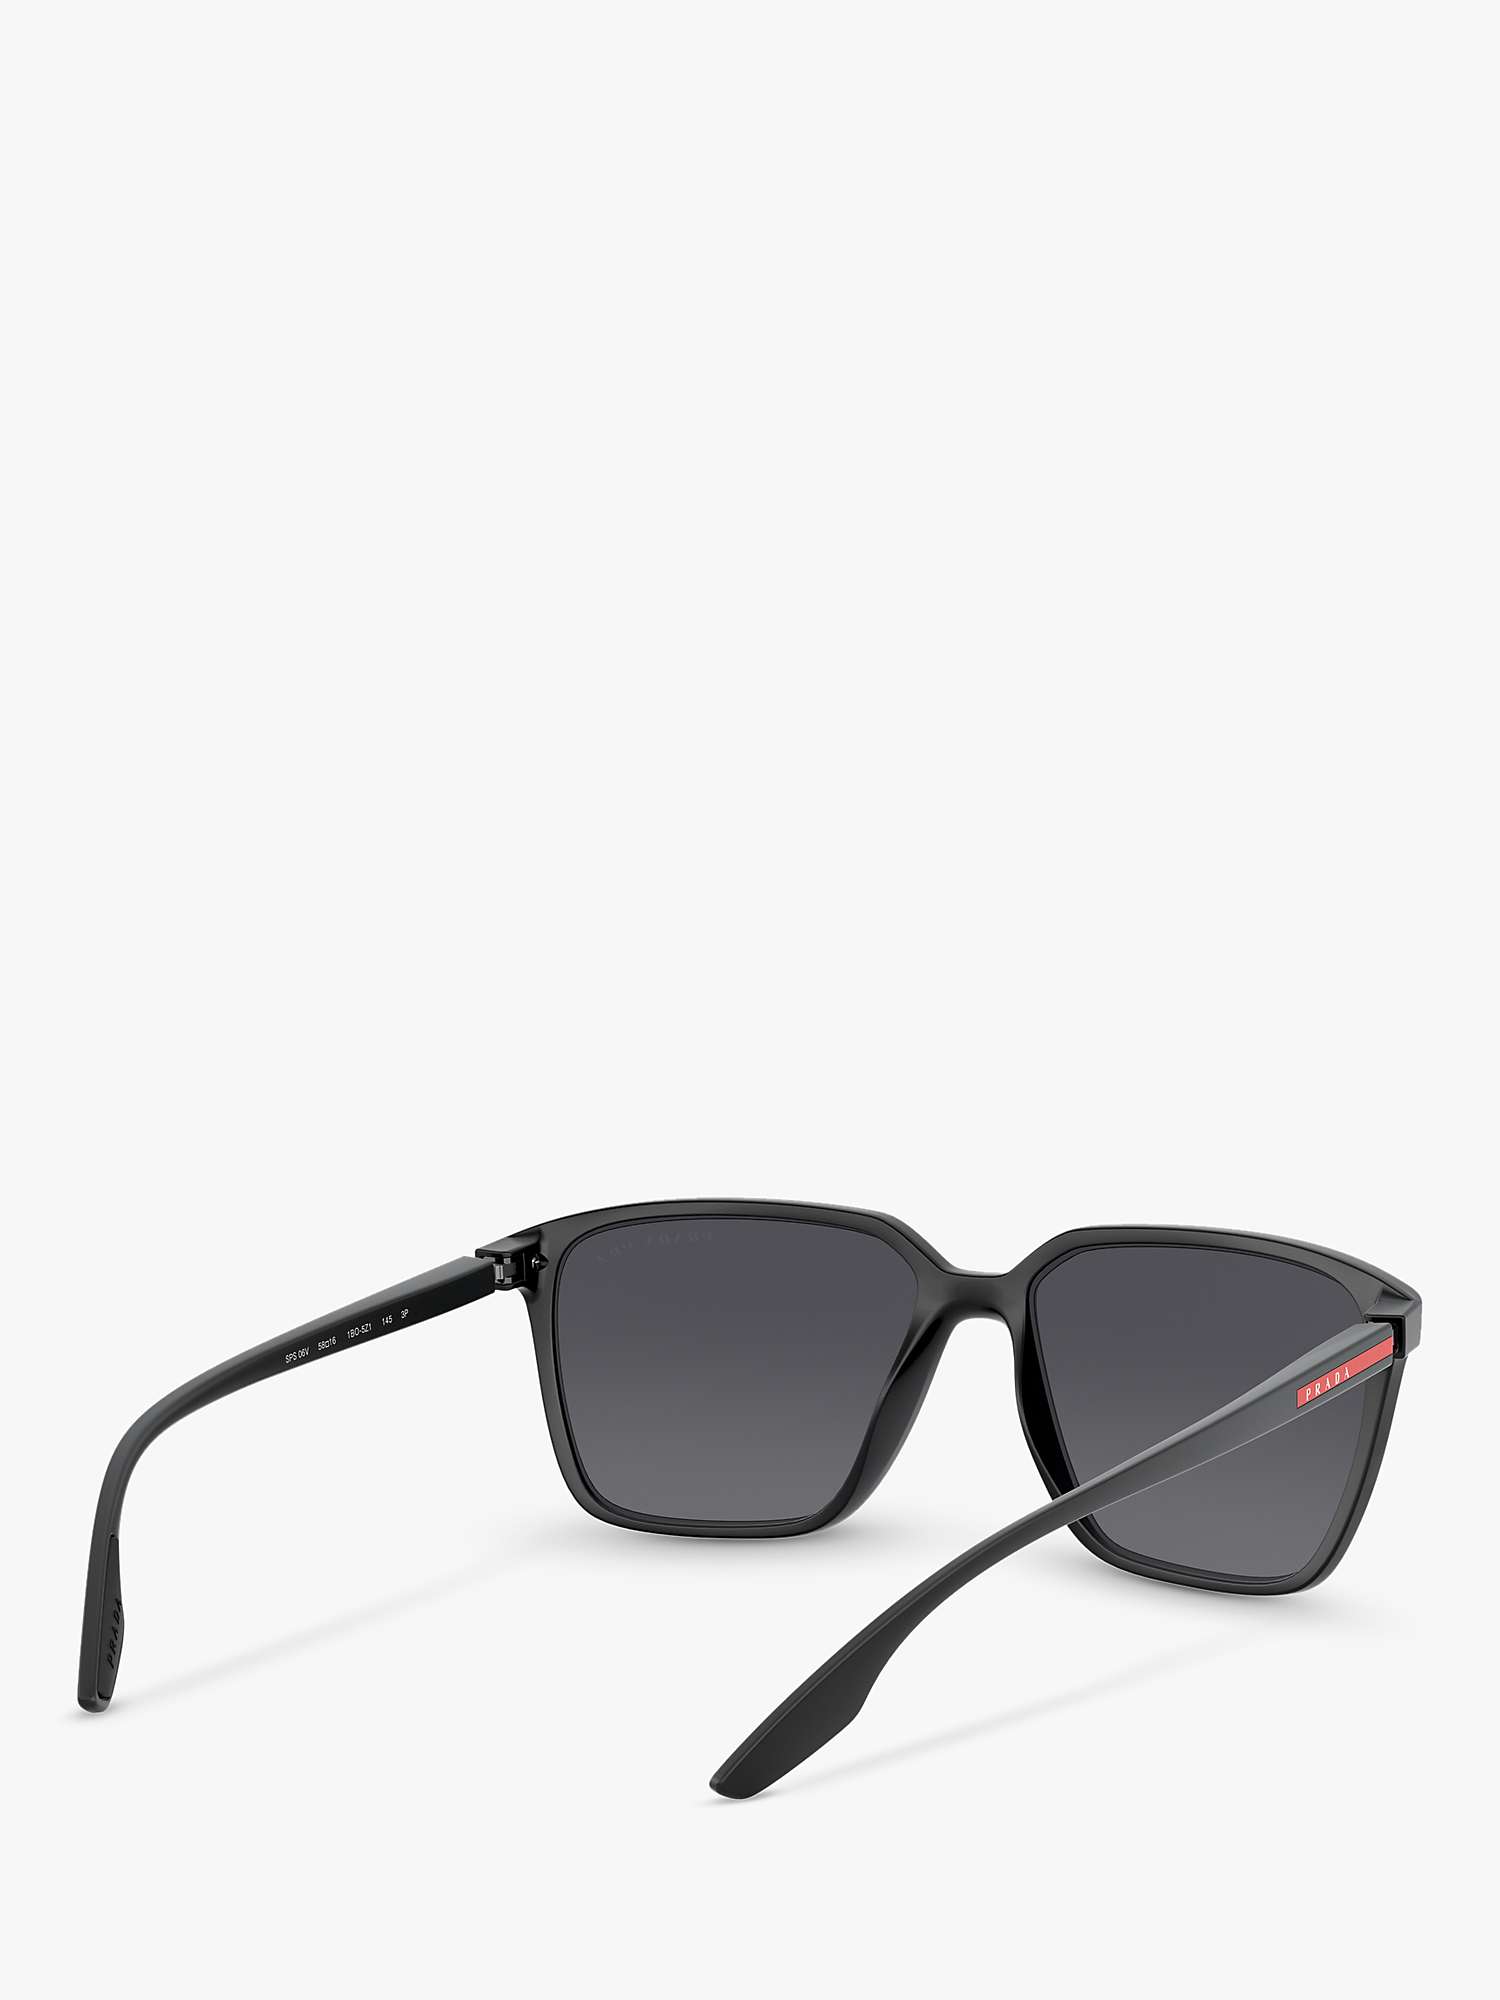 Buy Prada Linea Rossa PS 06VS Men's Polarised Square Sunglasses, Black/Grey Online at johnlewis.com